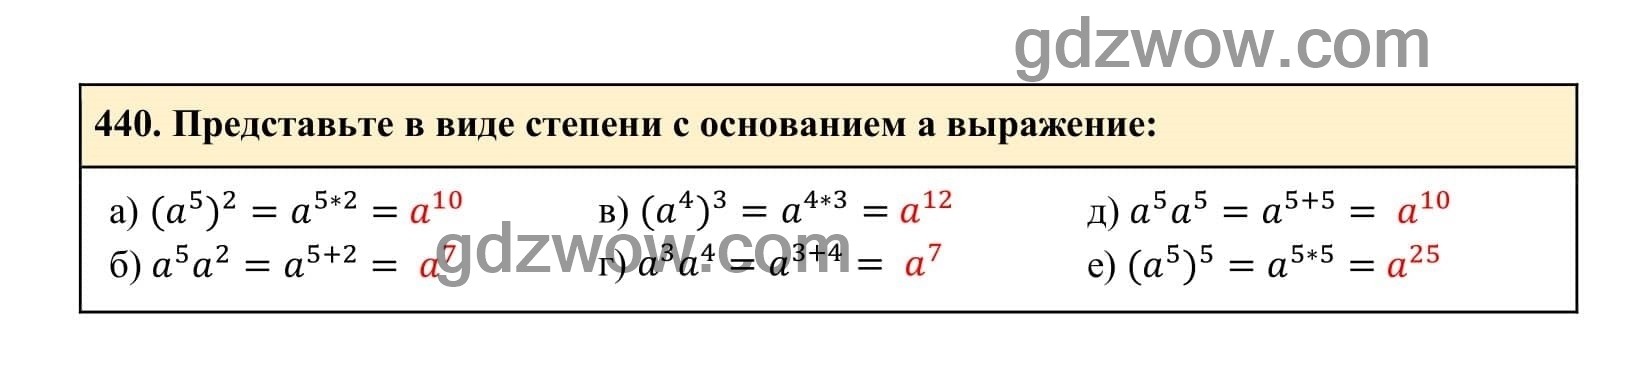 Упражнение 440 - ГДЗ по Алгебре 7 класс Учебник Макарычев (решебник) - GDZwow